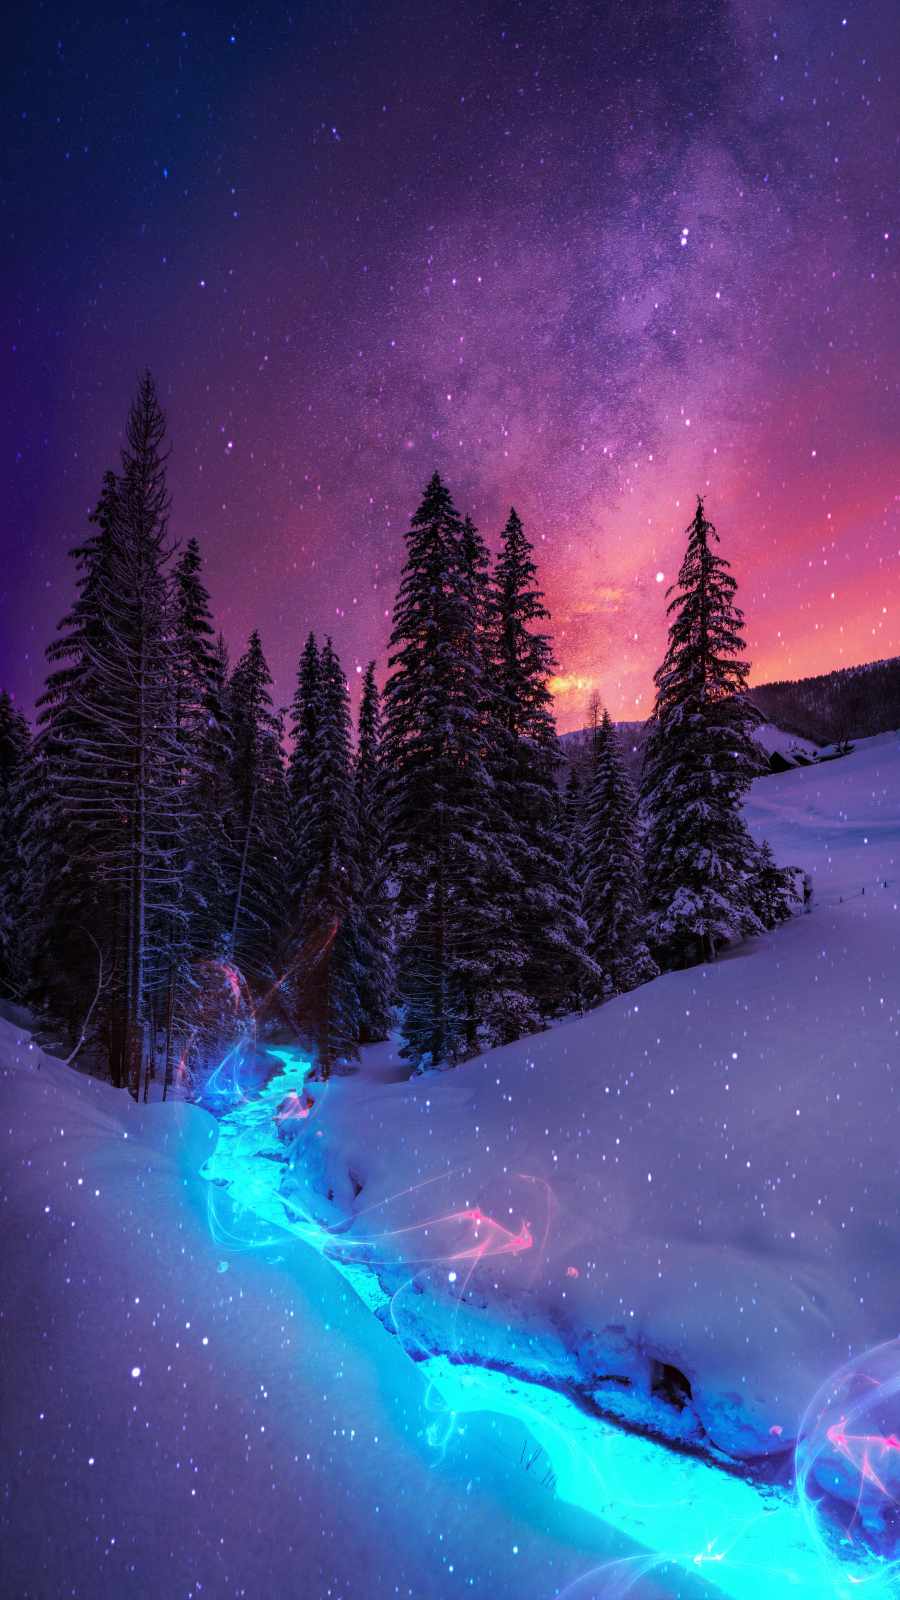 Magical Winter Forest IPhone Wallpaper Wallpaper, iPhone Wallpaper